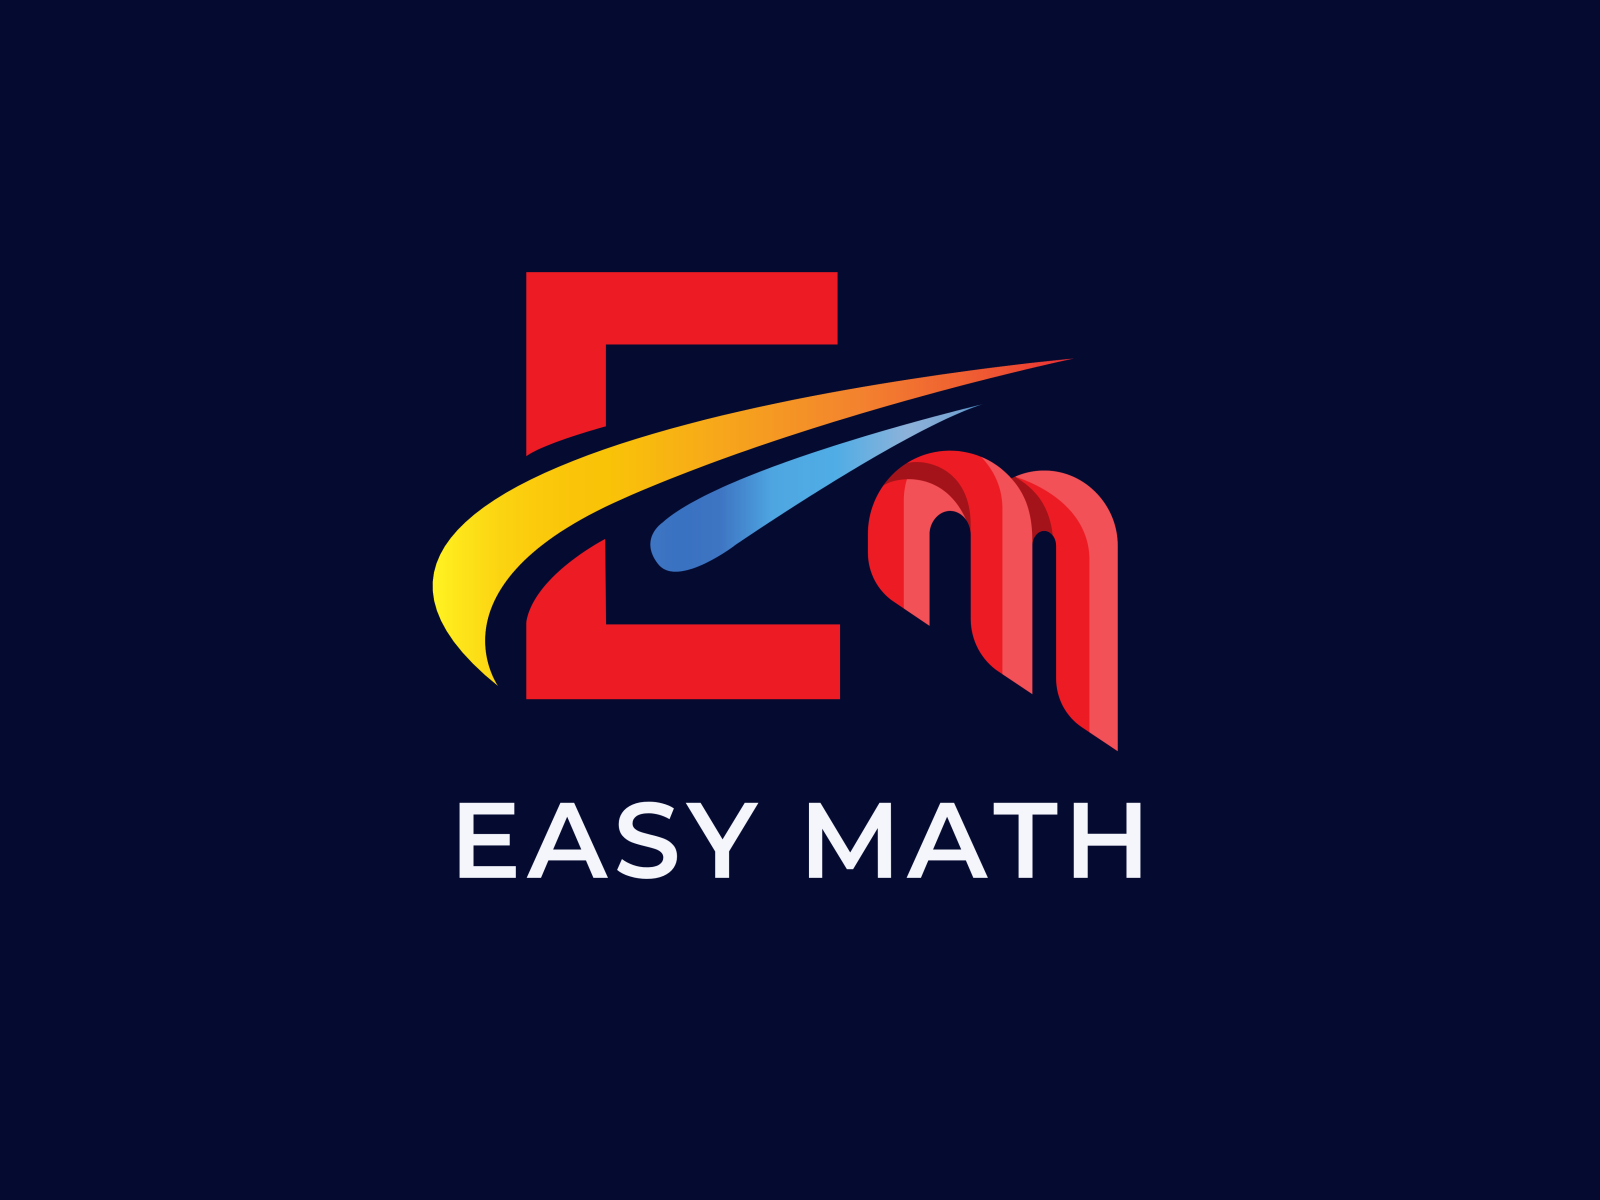 Maths logo Stock Photos, Royalty Free Maths logo Images | Depositphotos